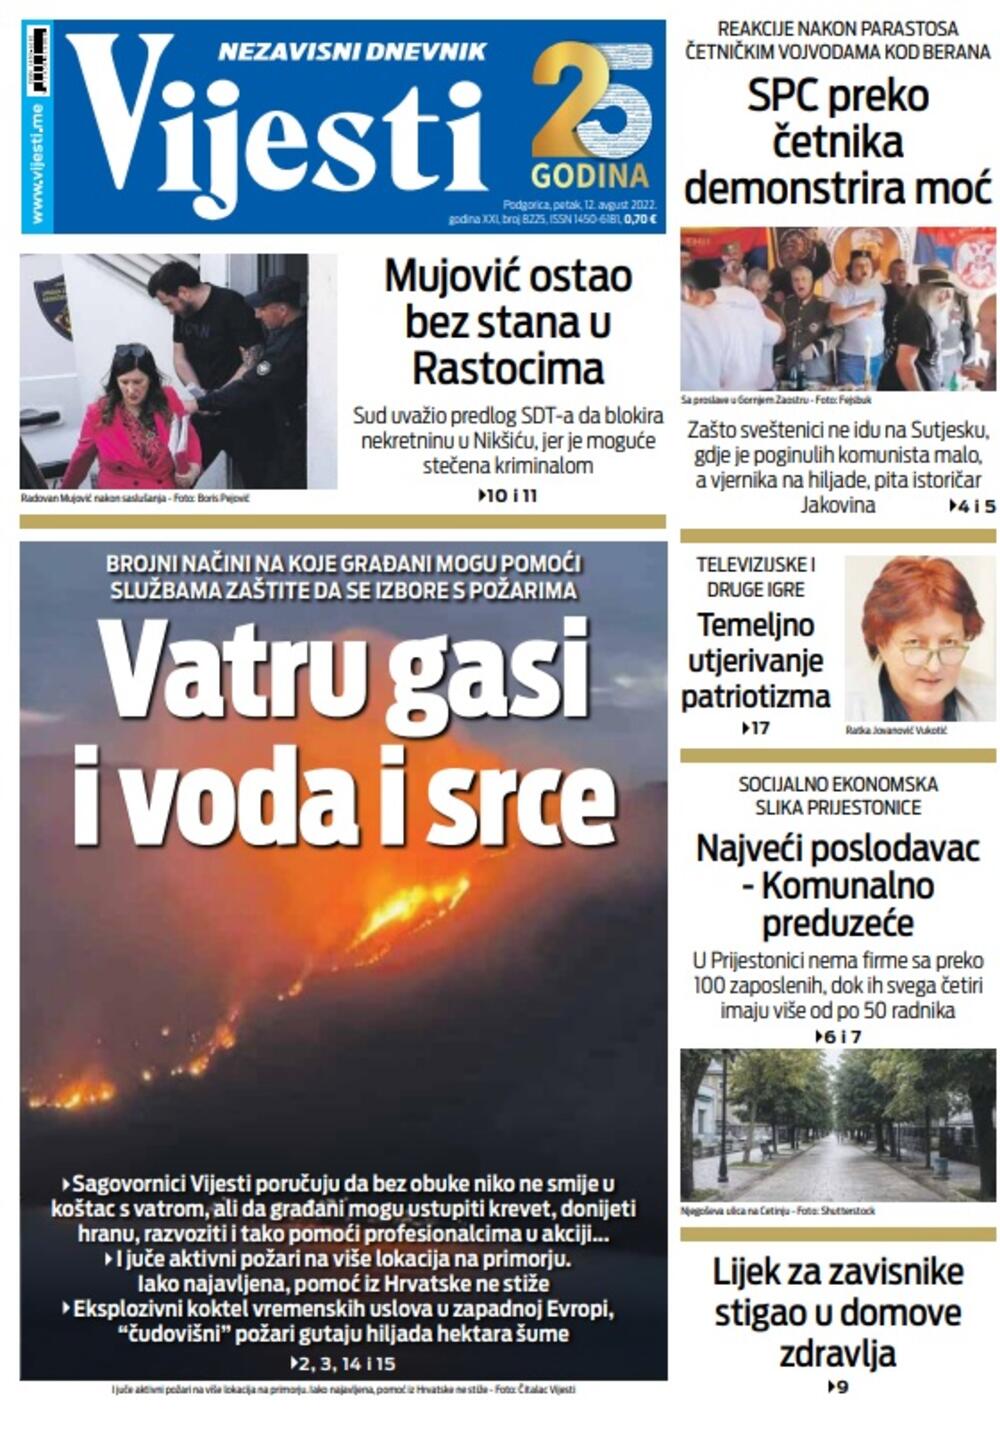 Naslovna strana "Vijesti" za petak 12. avgust 2022. godine, Foto: Vijesti